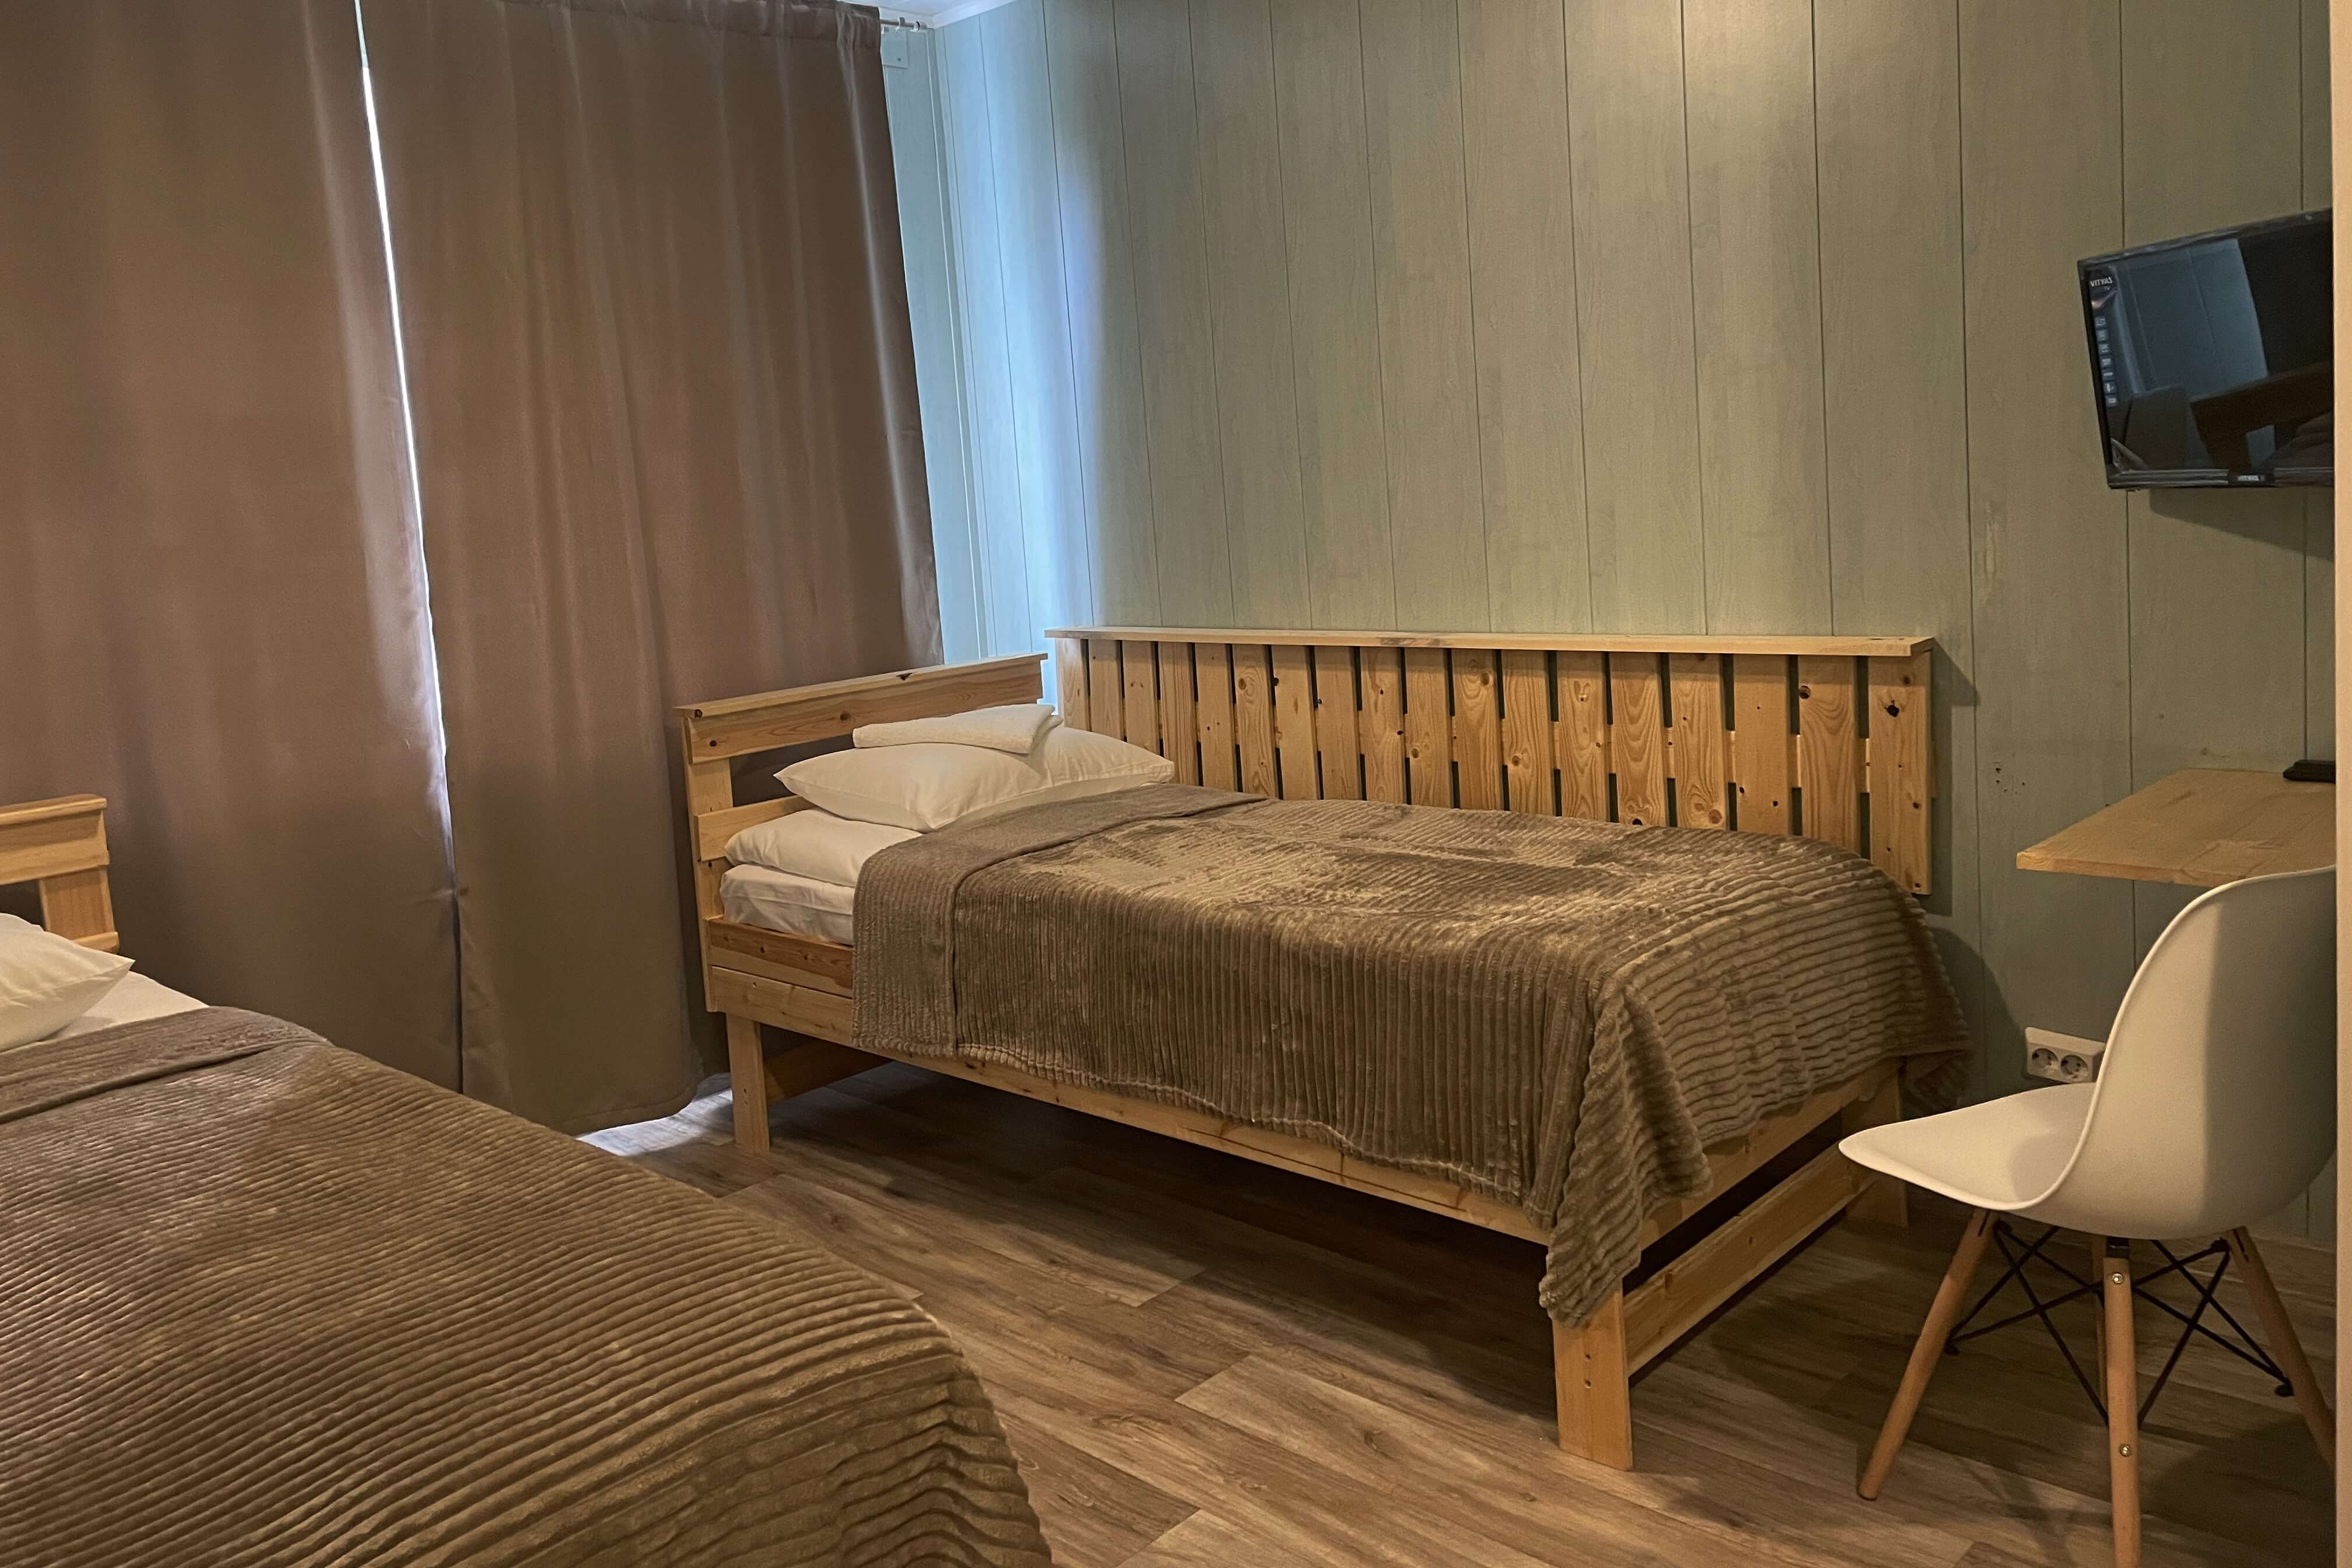 Кровати изготовлены из натурального дерева.